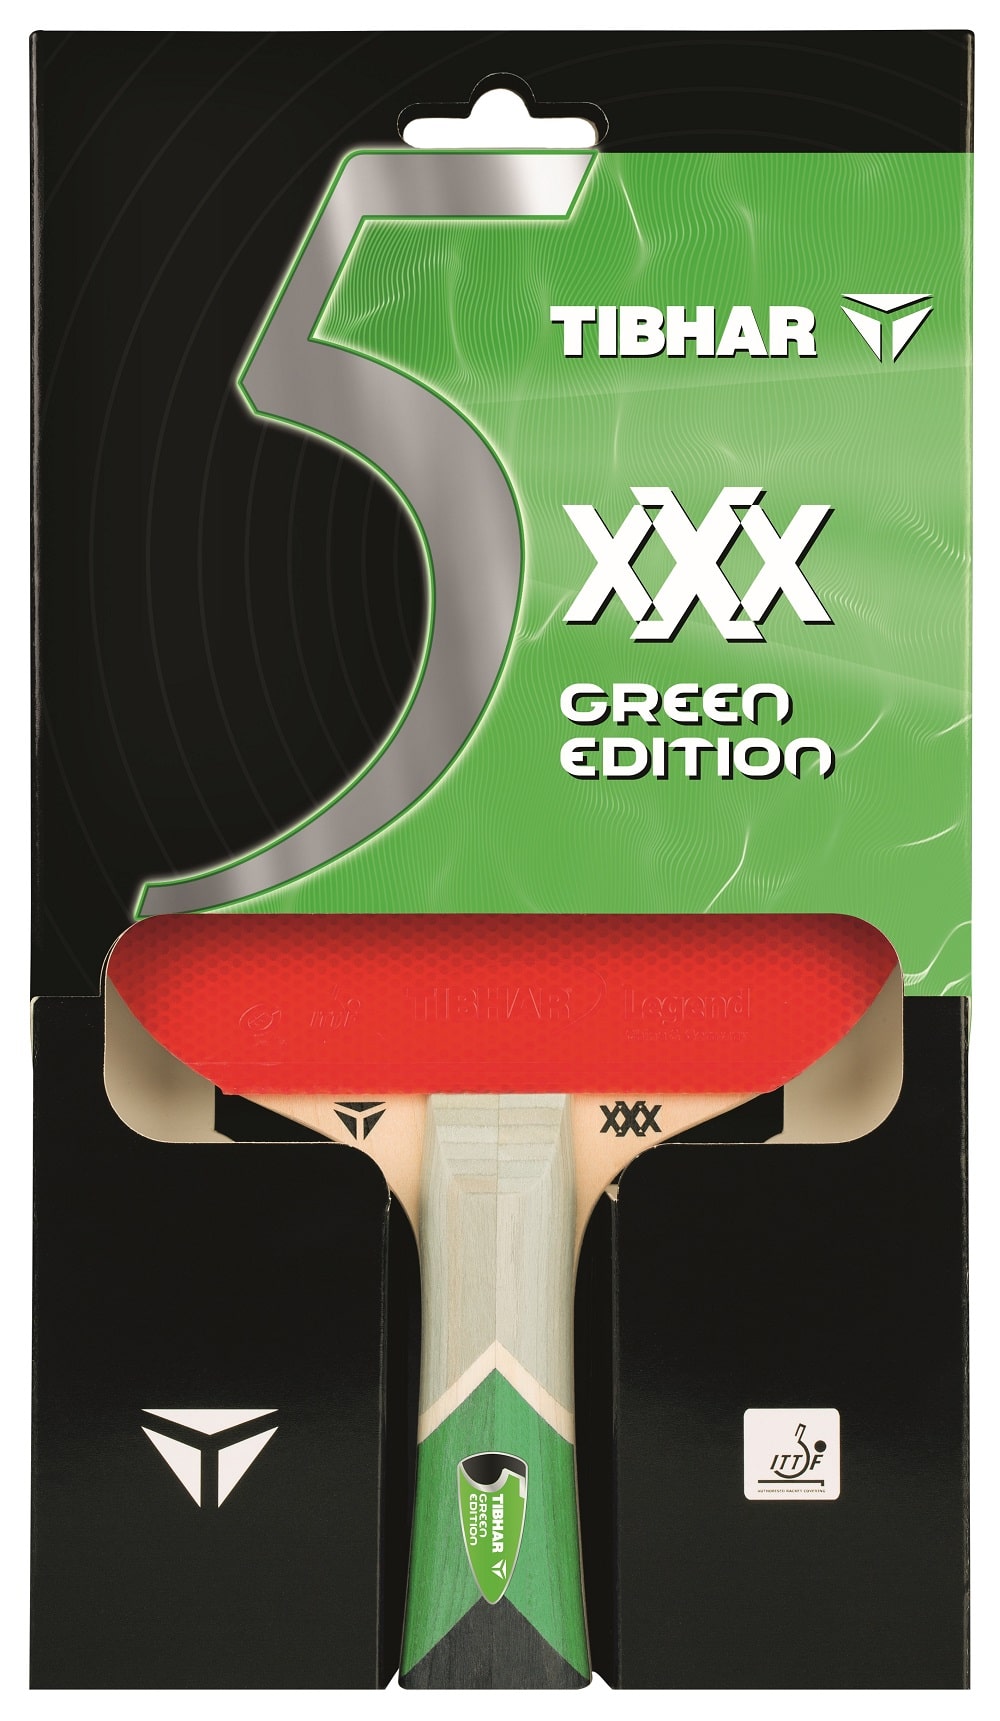 Tibhar Schläger xXx Green Edition TT-Xpert Tischtennis Onlineshop